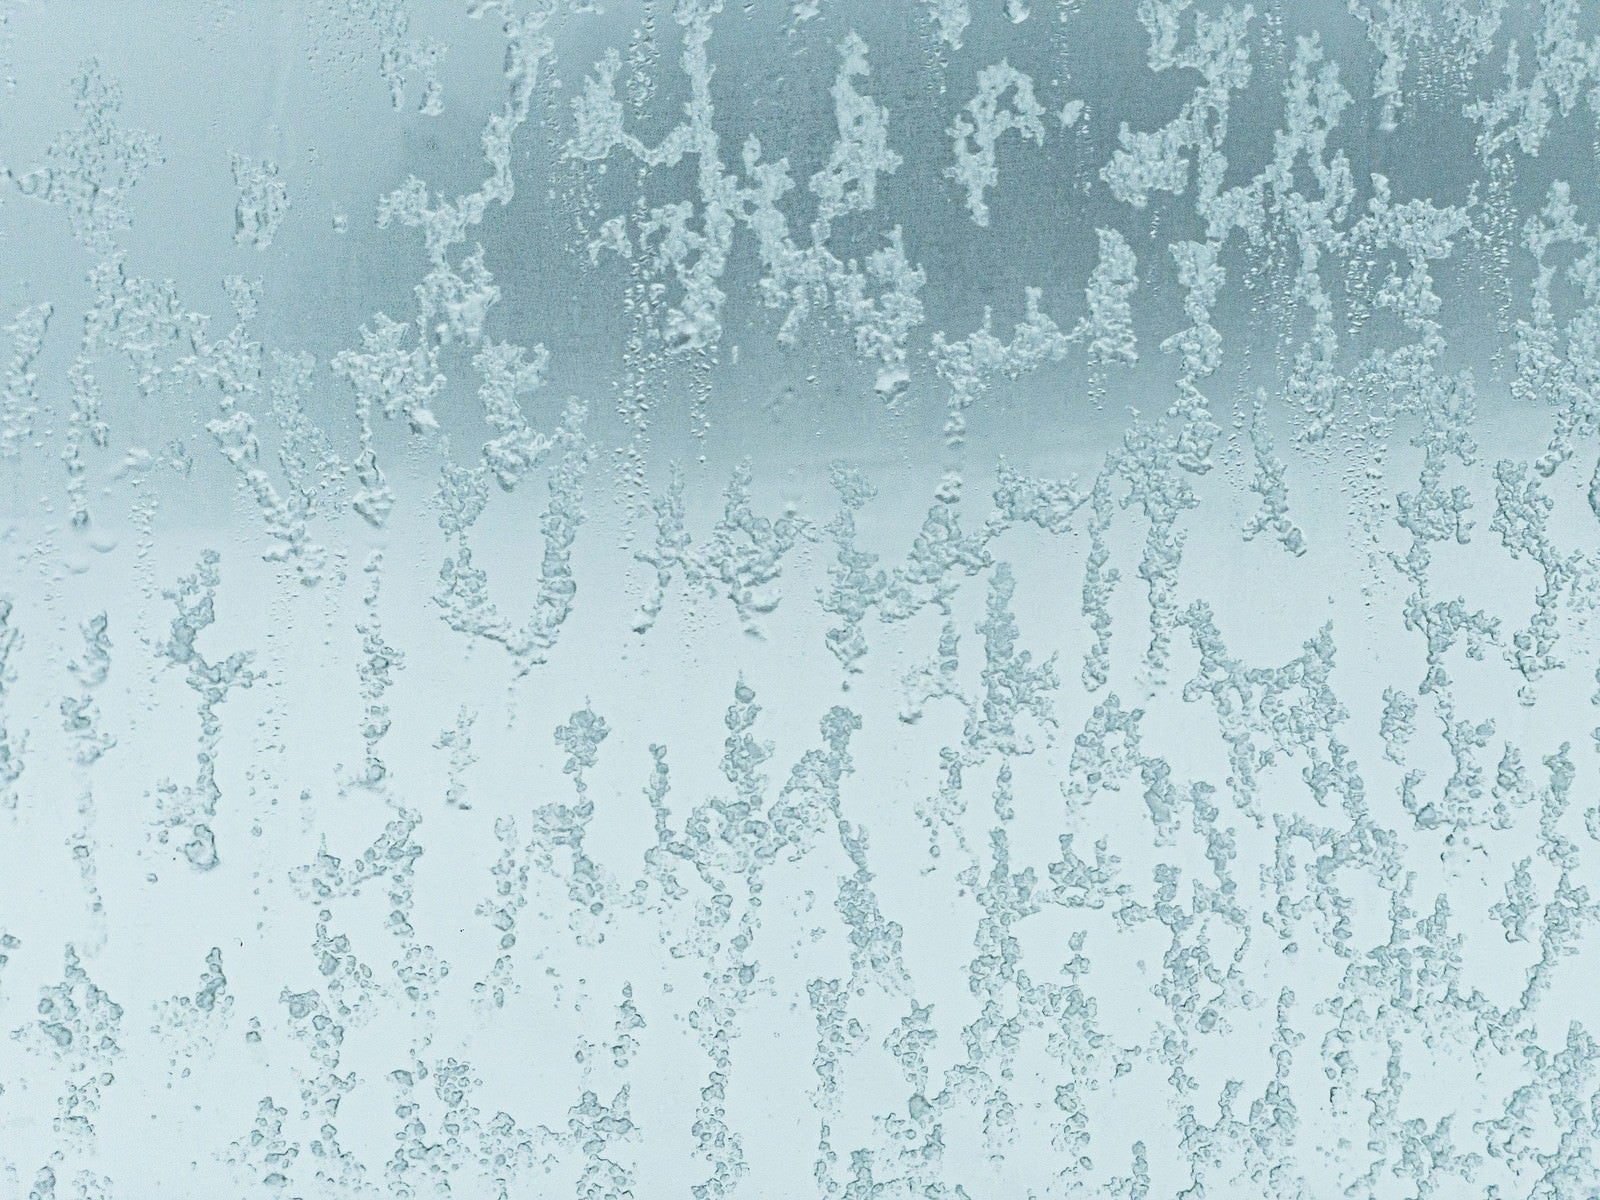 「窓ガラスに残る溶けた氷のテクスチャー」の写真